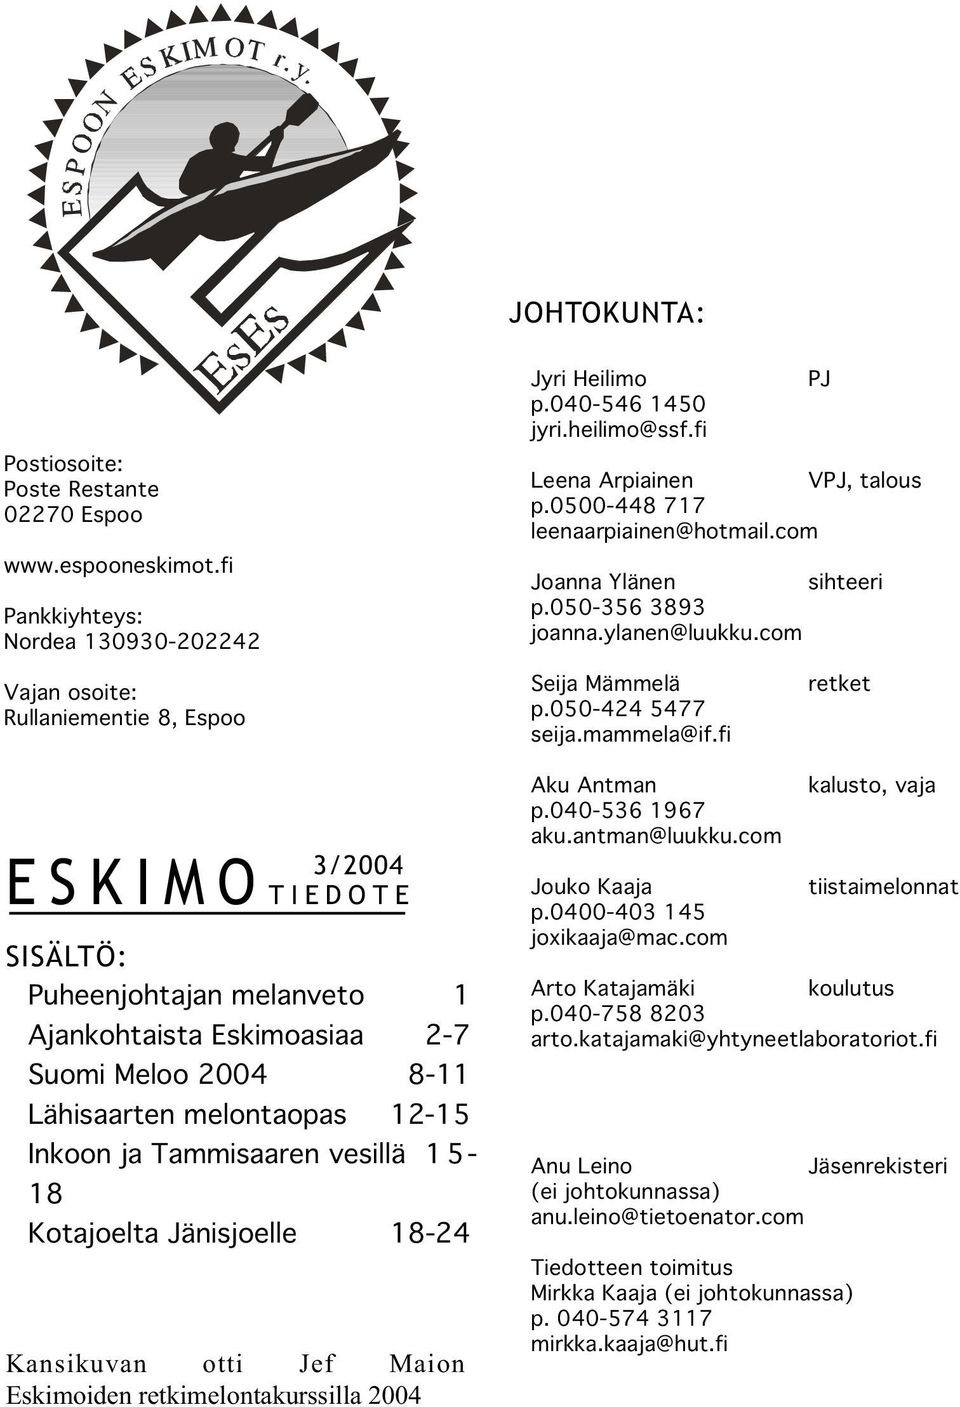 melontaopas 12-15 Inkoon ja Tammisaaren vesillä 1 5-18 Kotajoelta Jänisjoelle 18-24 Kansikuvan otti Jef Maion Eskimoiden retkimelontakurssilla 2004 Jyri Heilimo p.040-546 1450 jyri.heilimo@ssf.